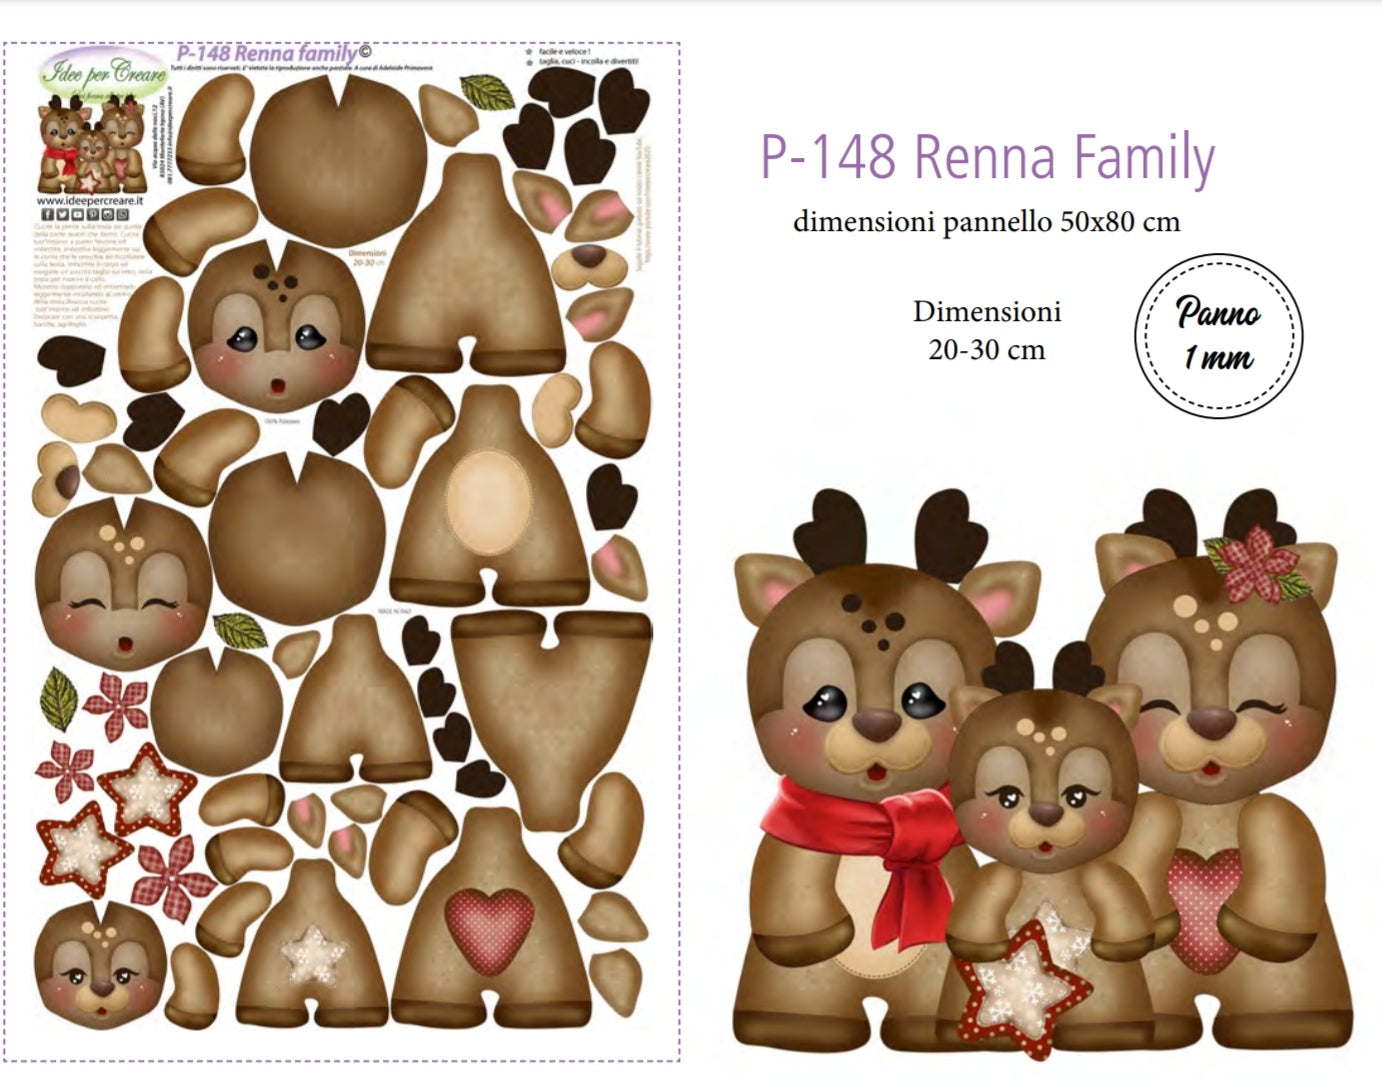 Pannello Renna Family - P148 - Idee Per Creare